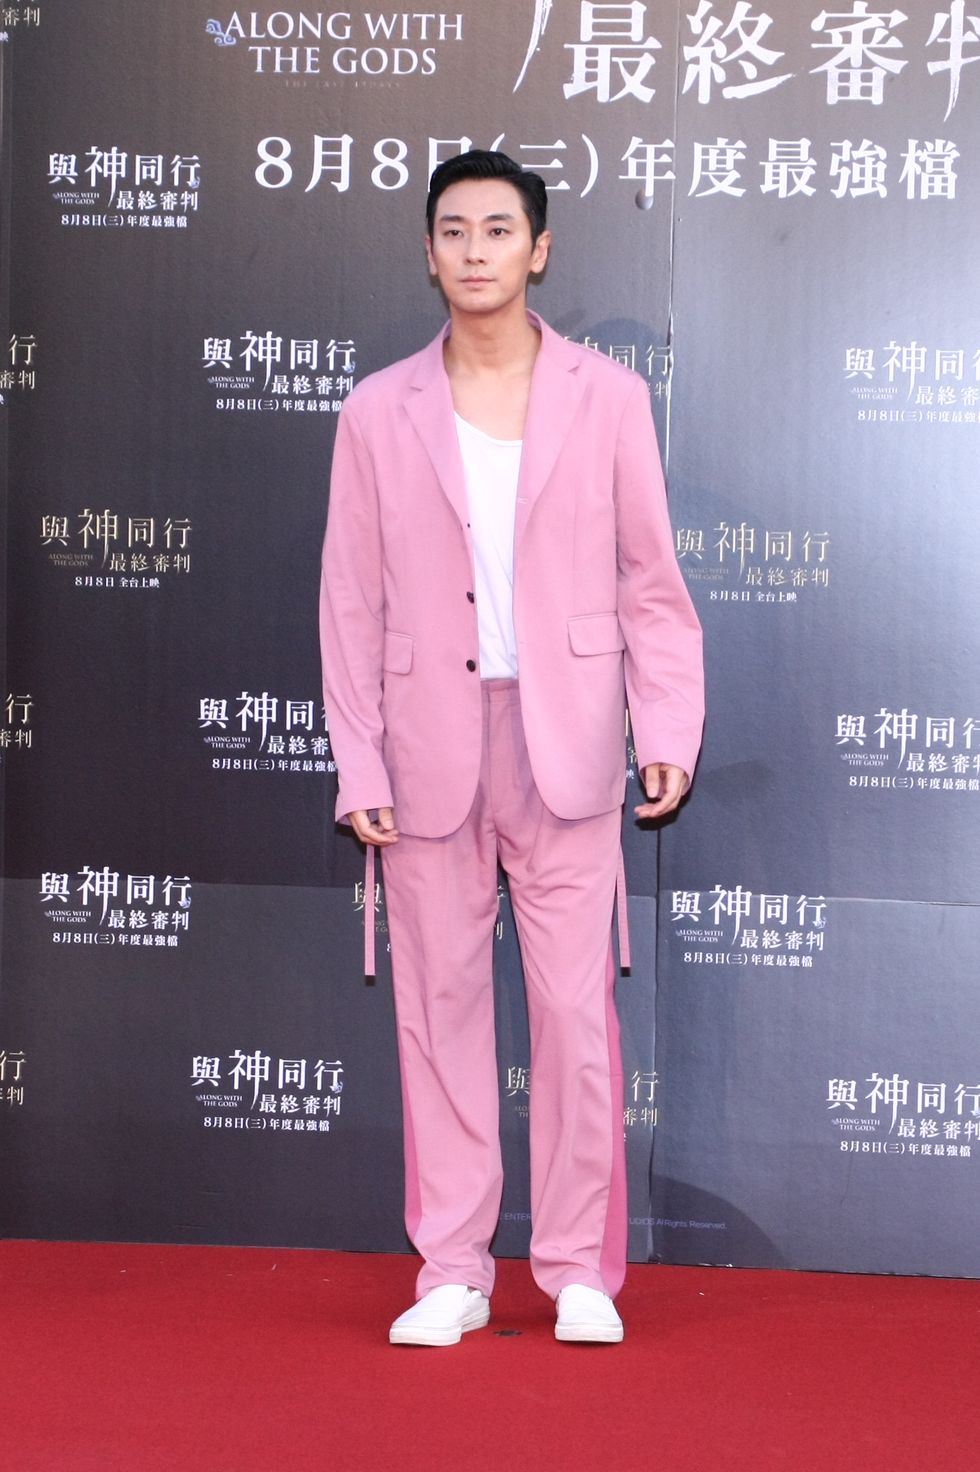 朱智勛身穿粉紅色西裝出席與神同行台北首映會